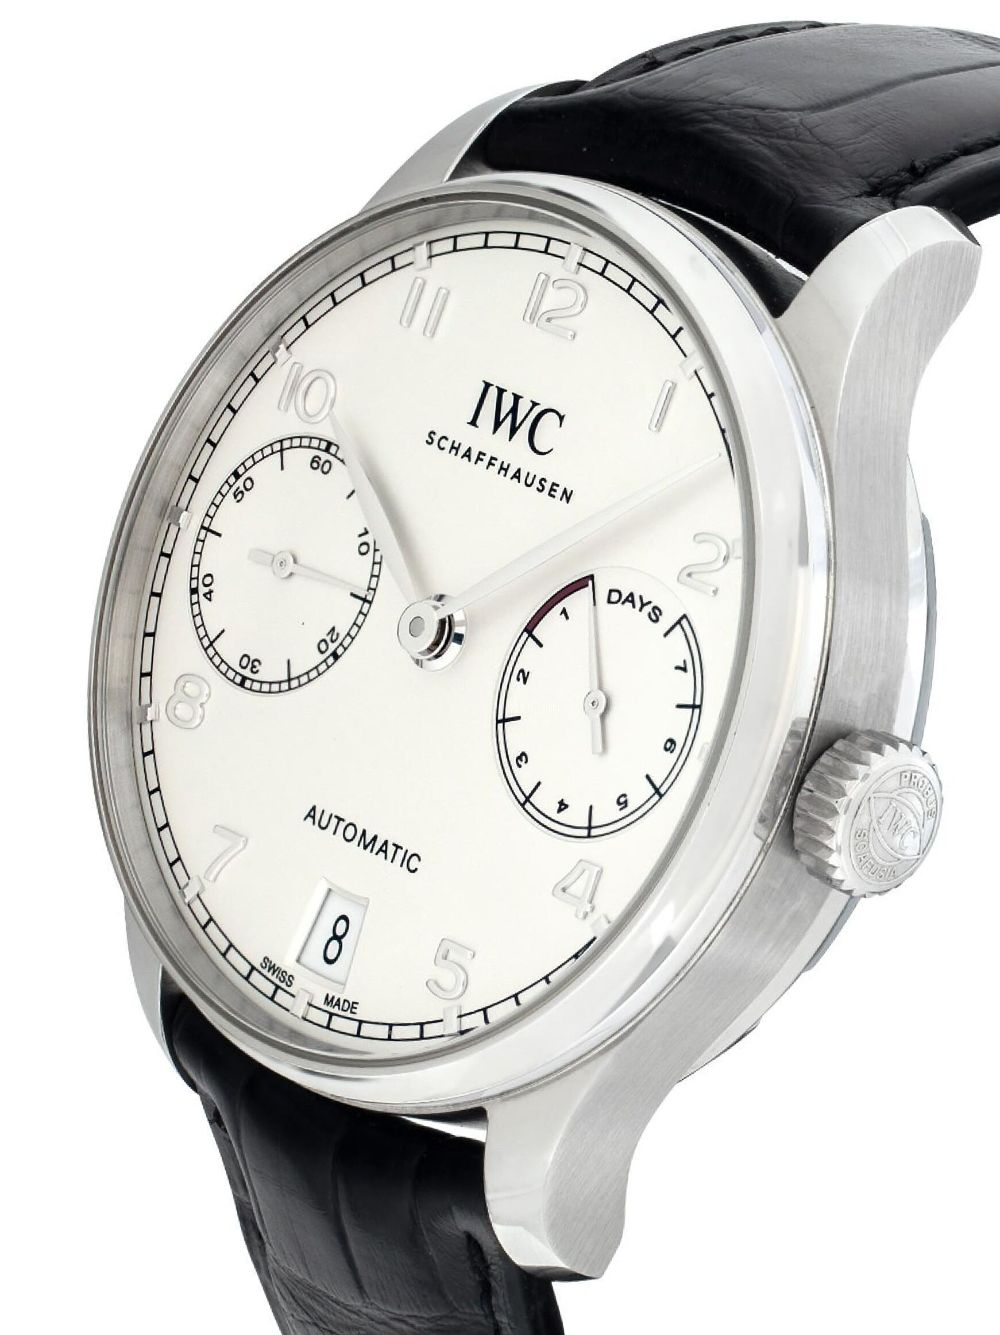 IWC Schaffhausen 2020 pre-owned Portugieser horloge - Zilver